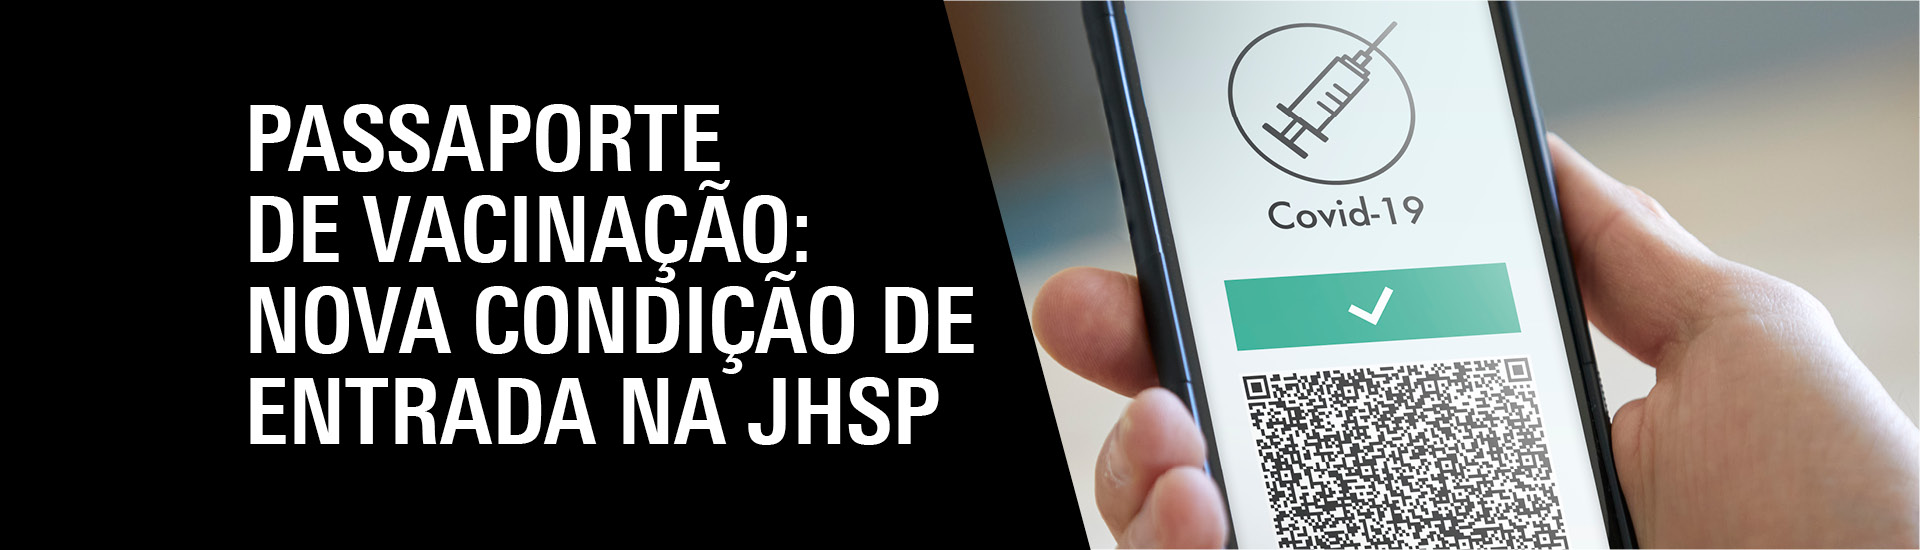 O PASSAPORTE DE VACINAÇÃO É A NOVA CONDIÇÃO PARA VISITAR A JHSP. Detalhe de mão segurando um celular com passaporte de vacinação online